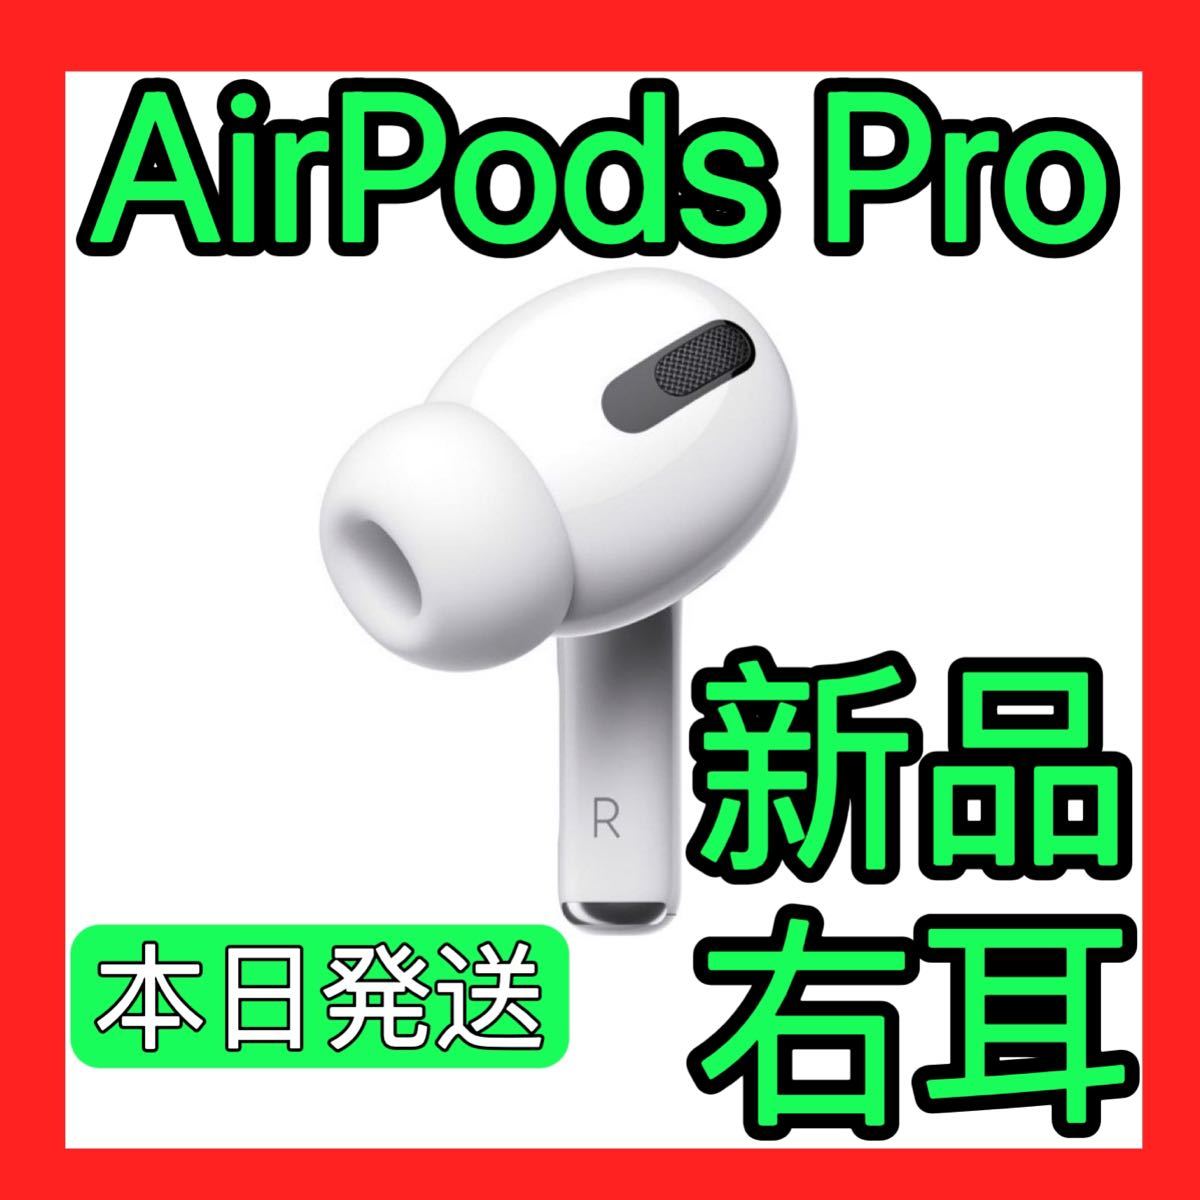 Apple純正品 AirPods Pro 第一世代 エアーポッズプロ 左耳のみ 新品 